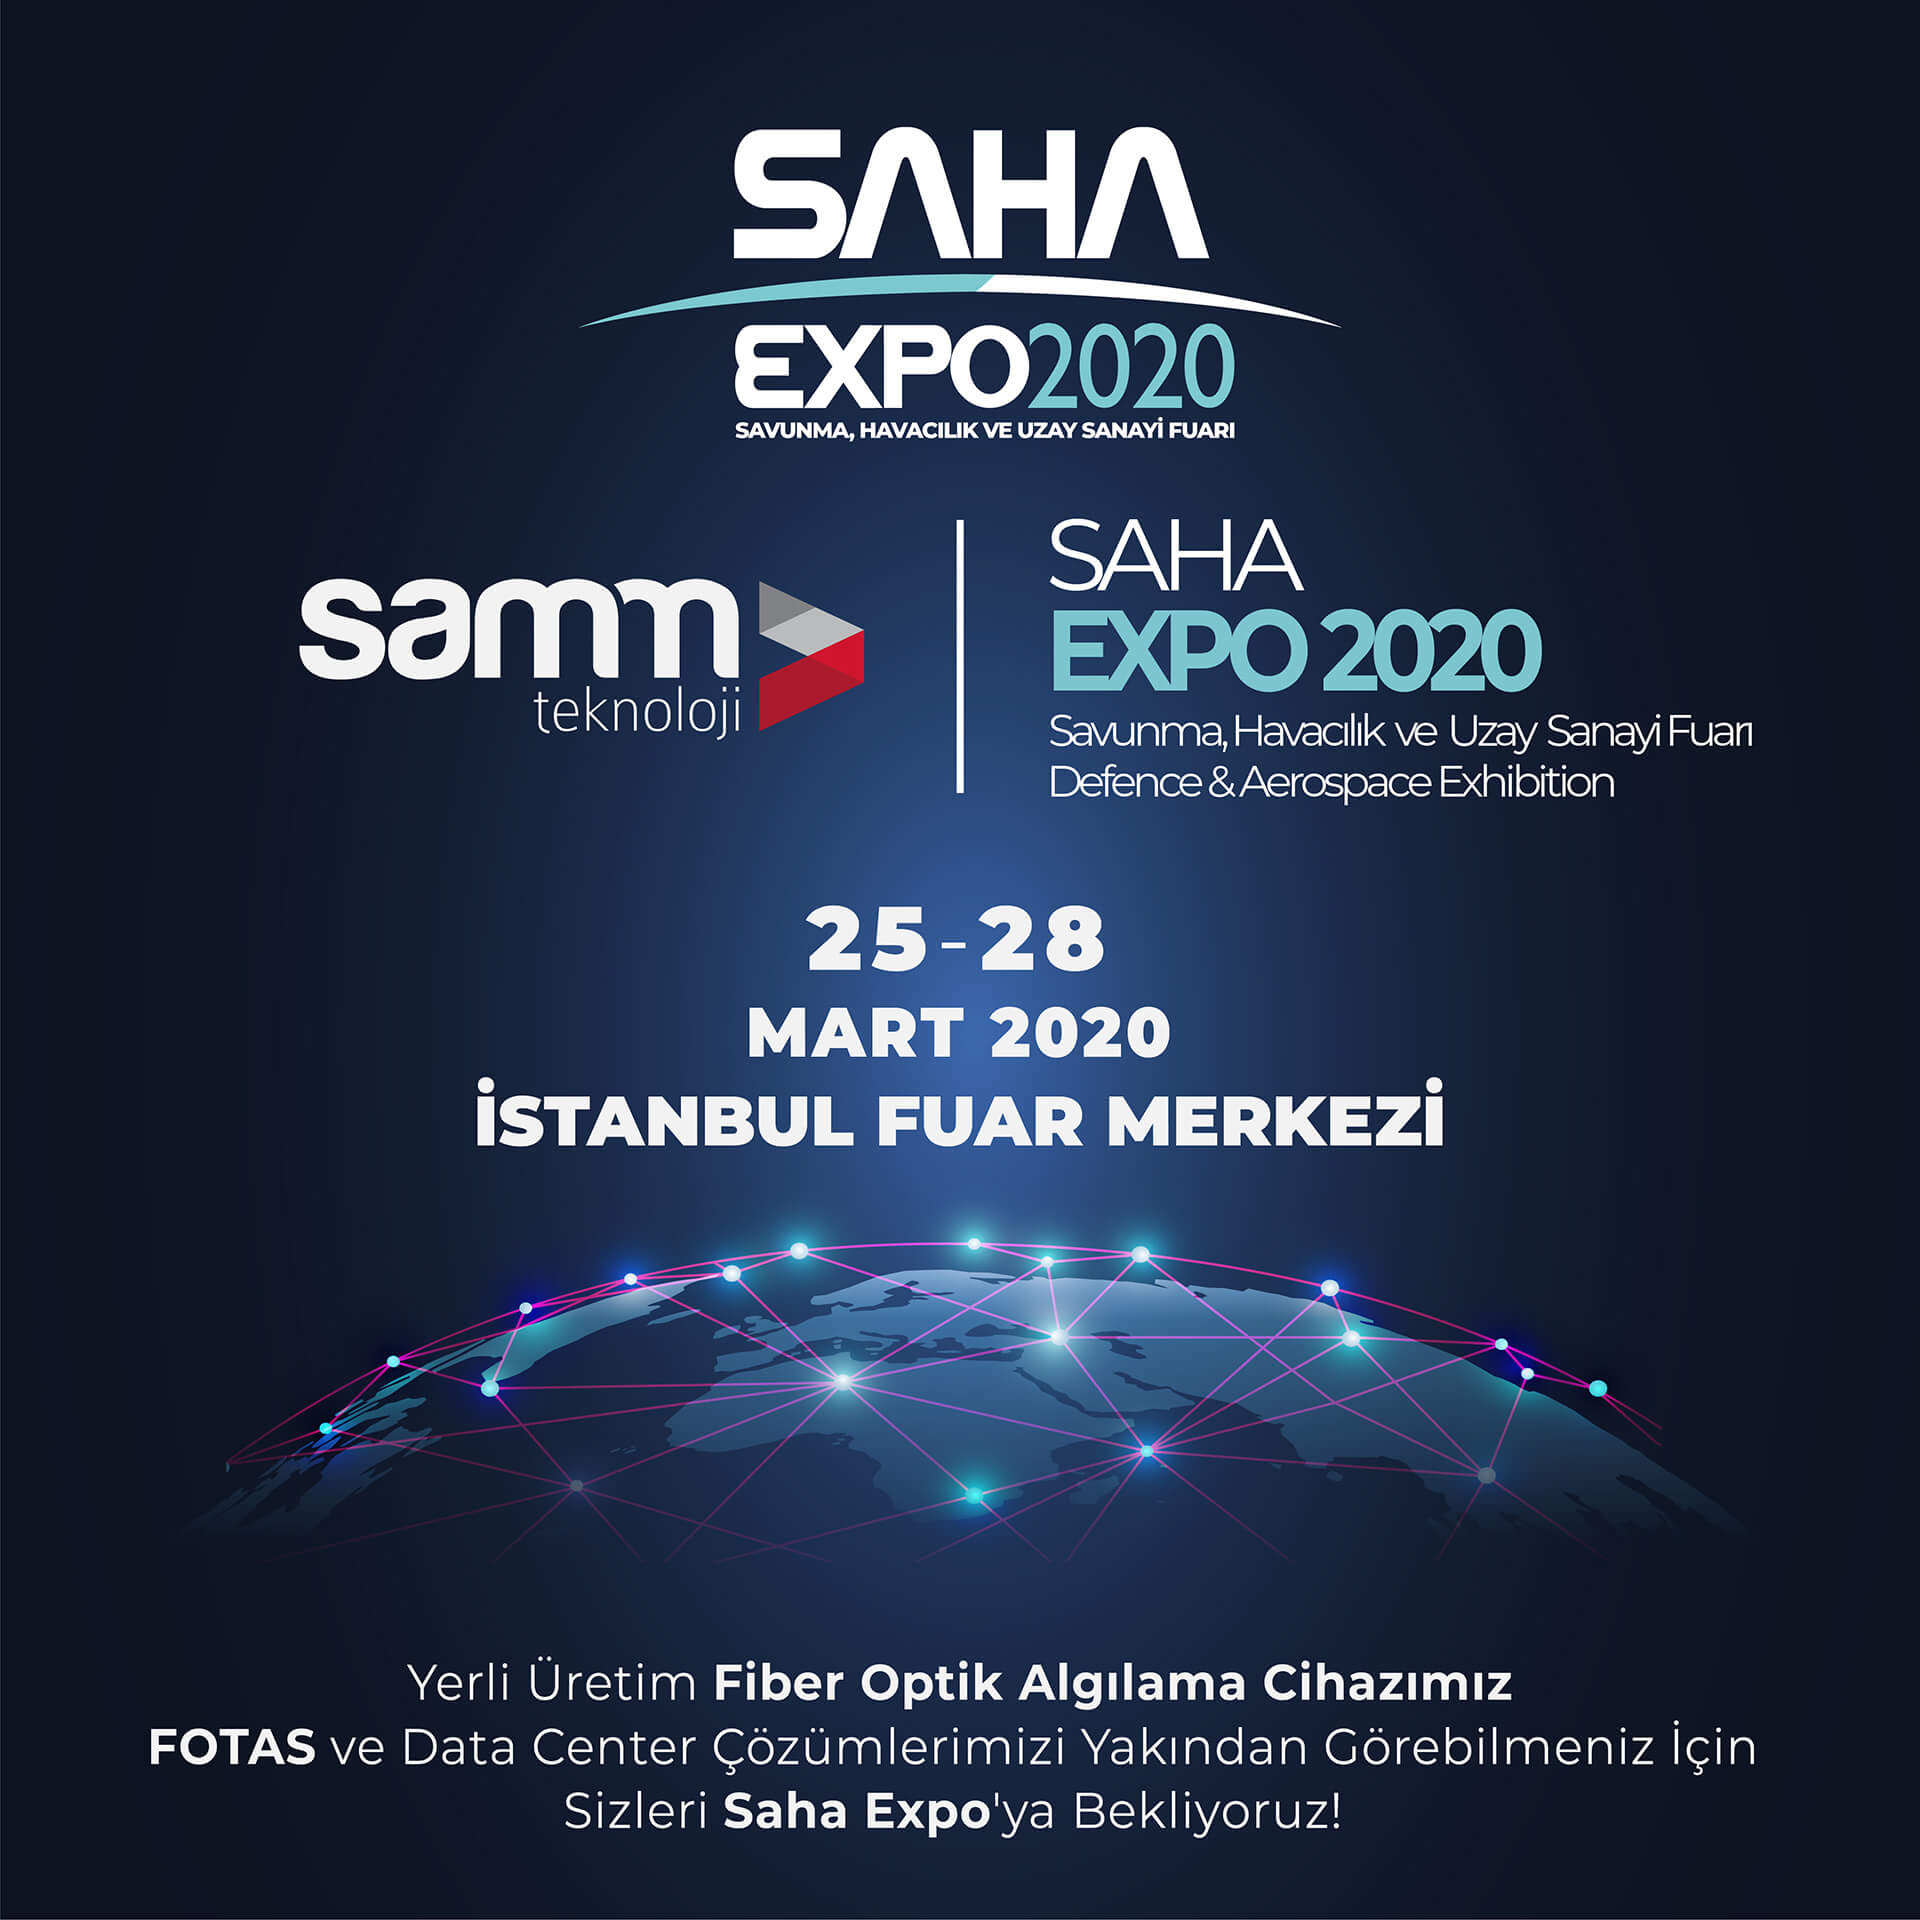 SAHA EXPO 2020’’ Savunma Havacılık ve Uzay Sanayi Fuarı | Samm Teknoloji